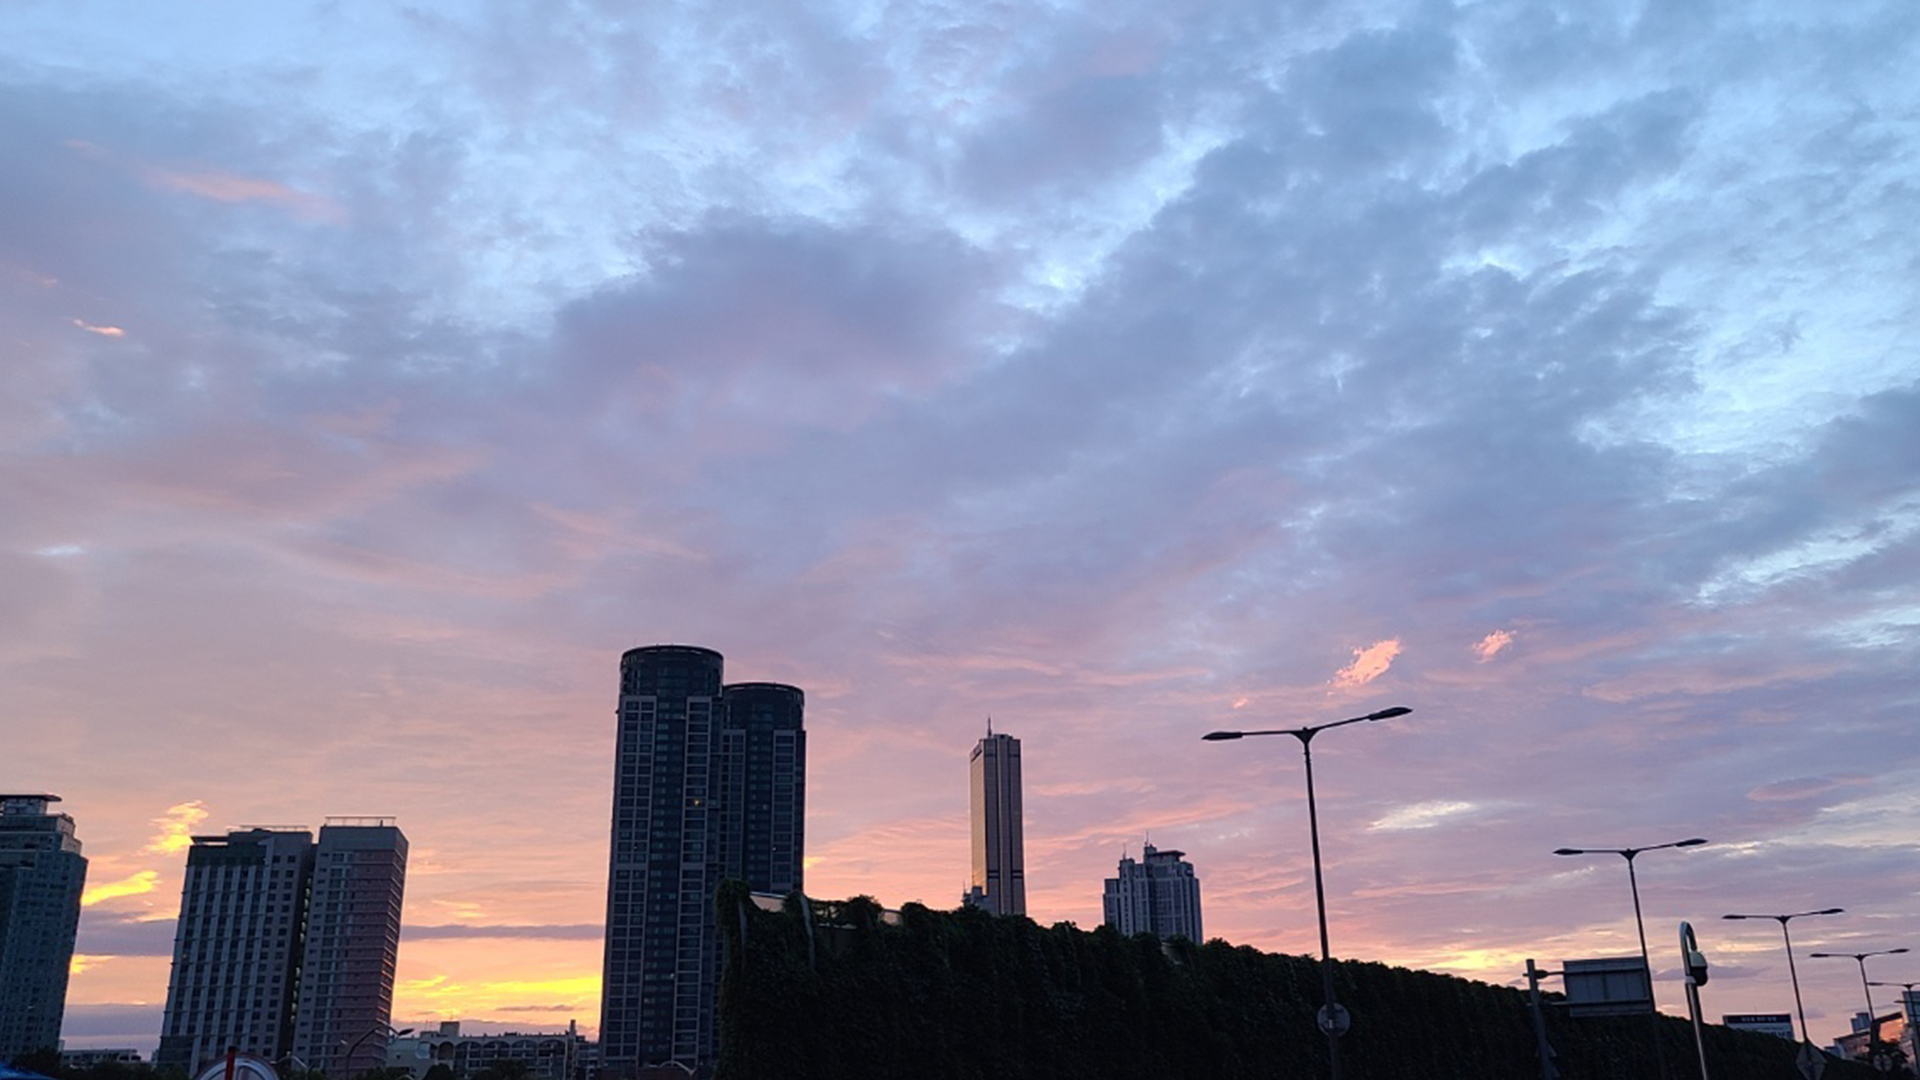 비 오기 전 무겁게 내려앉은 구름과 분홍색, 주홍색이 눈에 띄는 하늘이다. 강민혜 기자